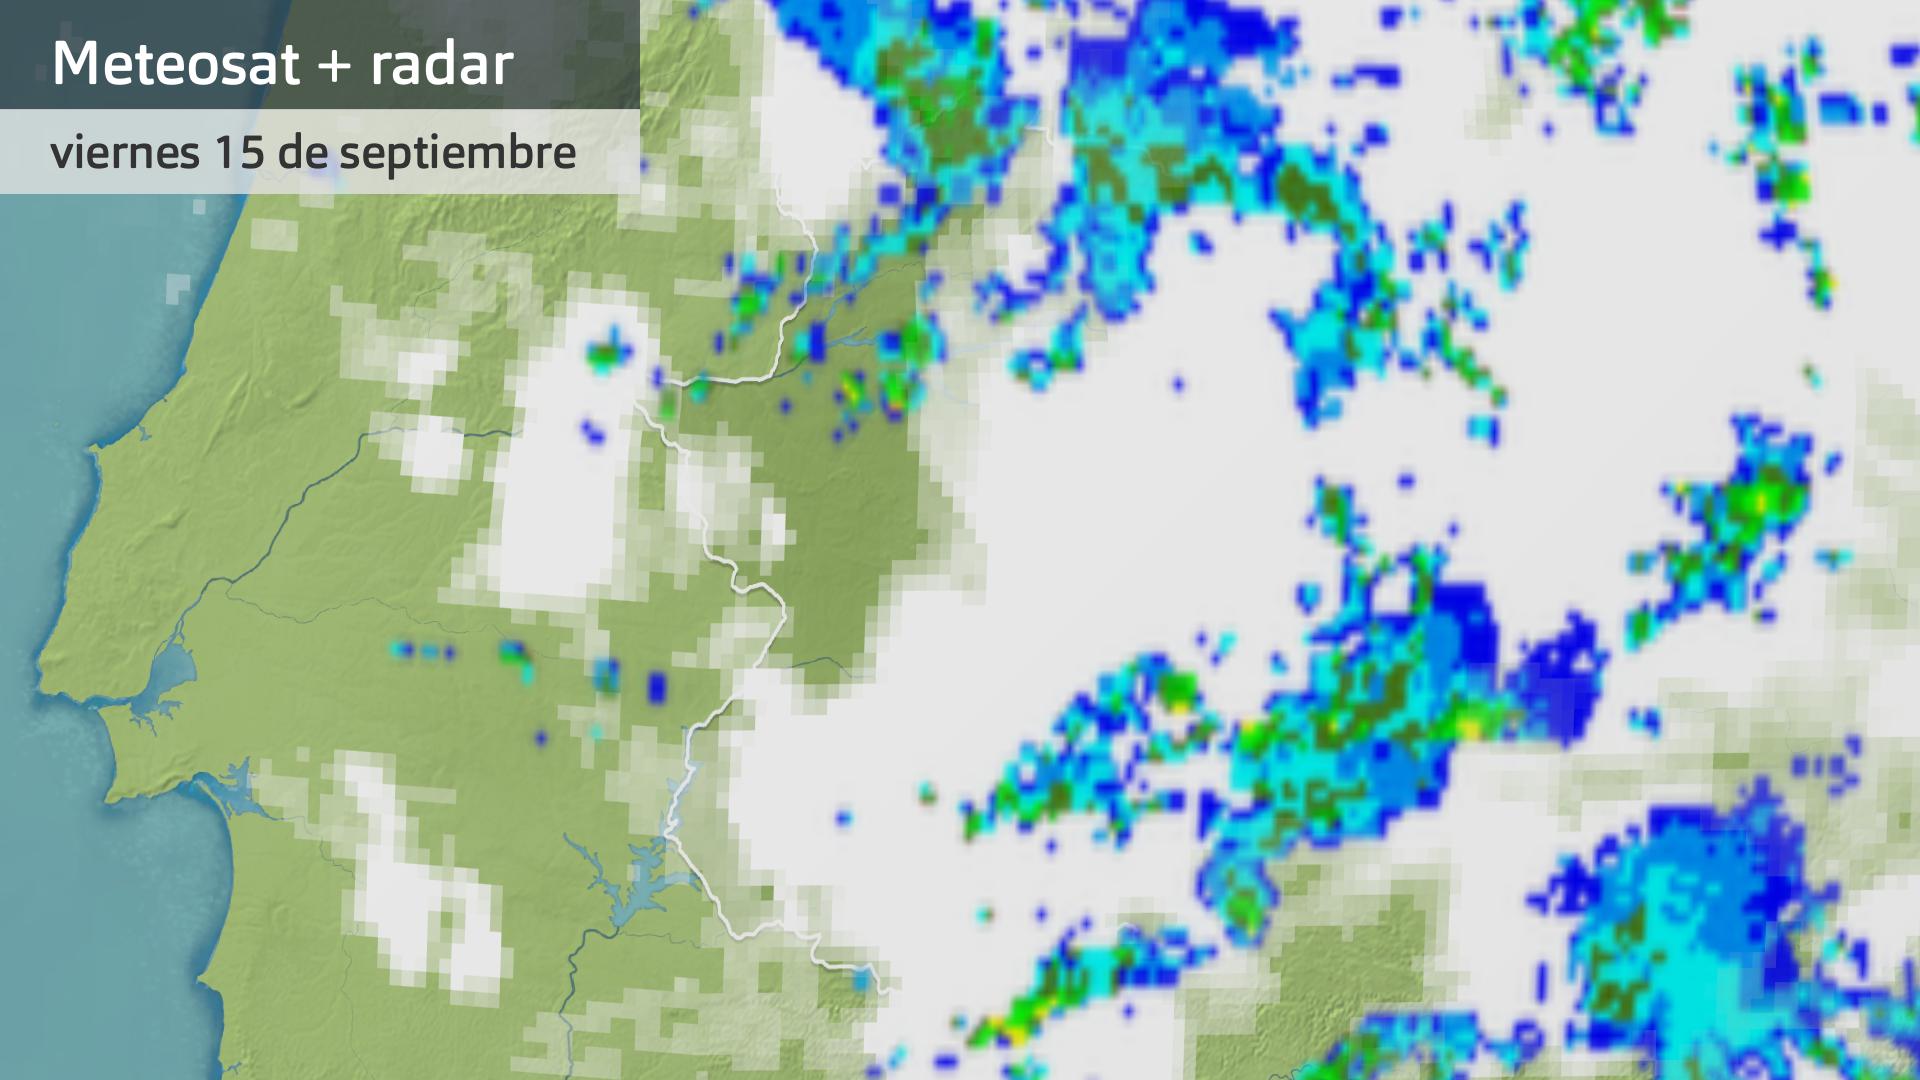 Imagen del Meteosat + radar meteorológico viernes 15 de septembre 5:15 h.